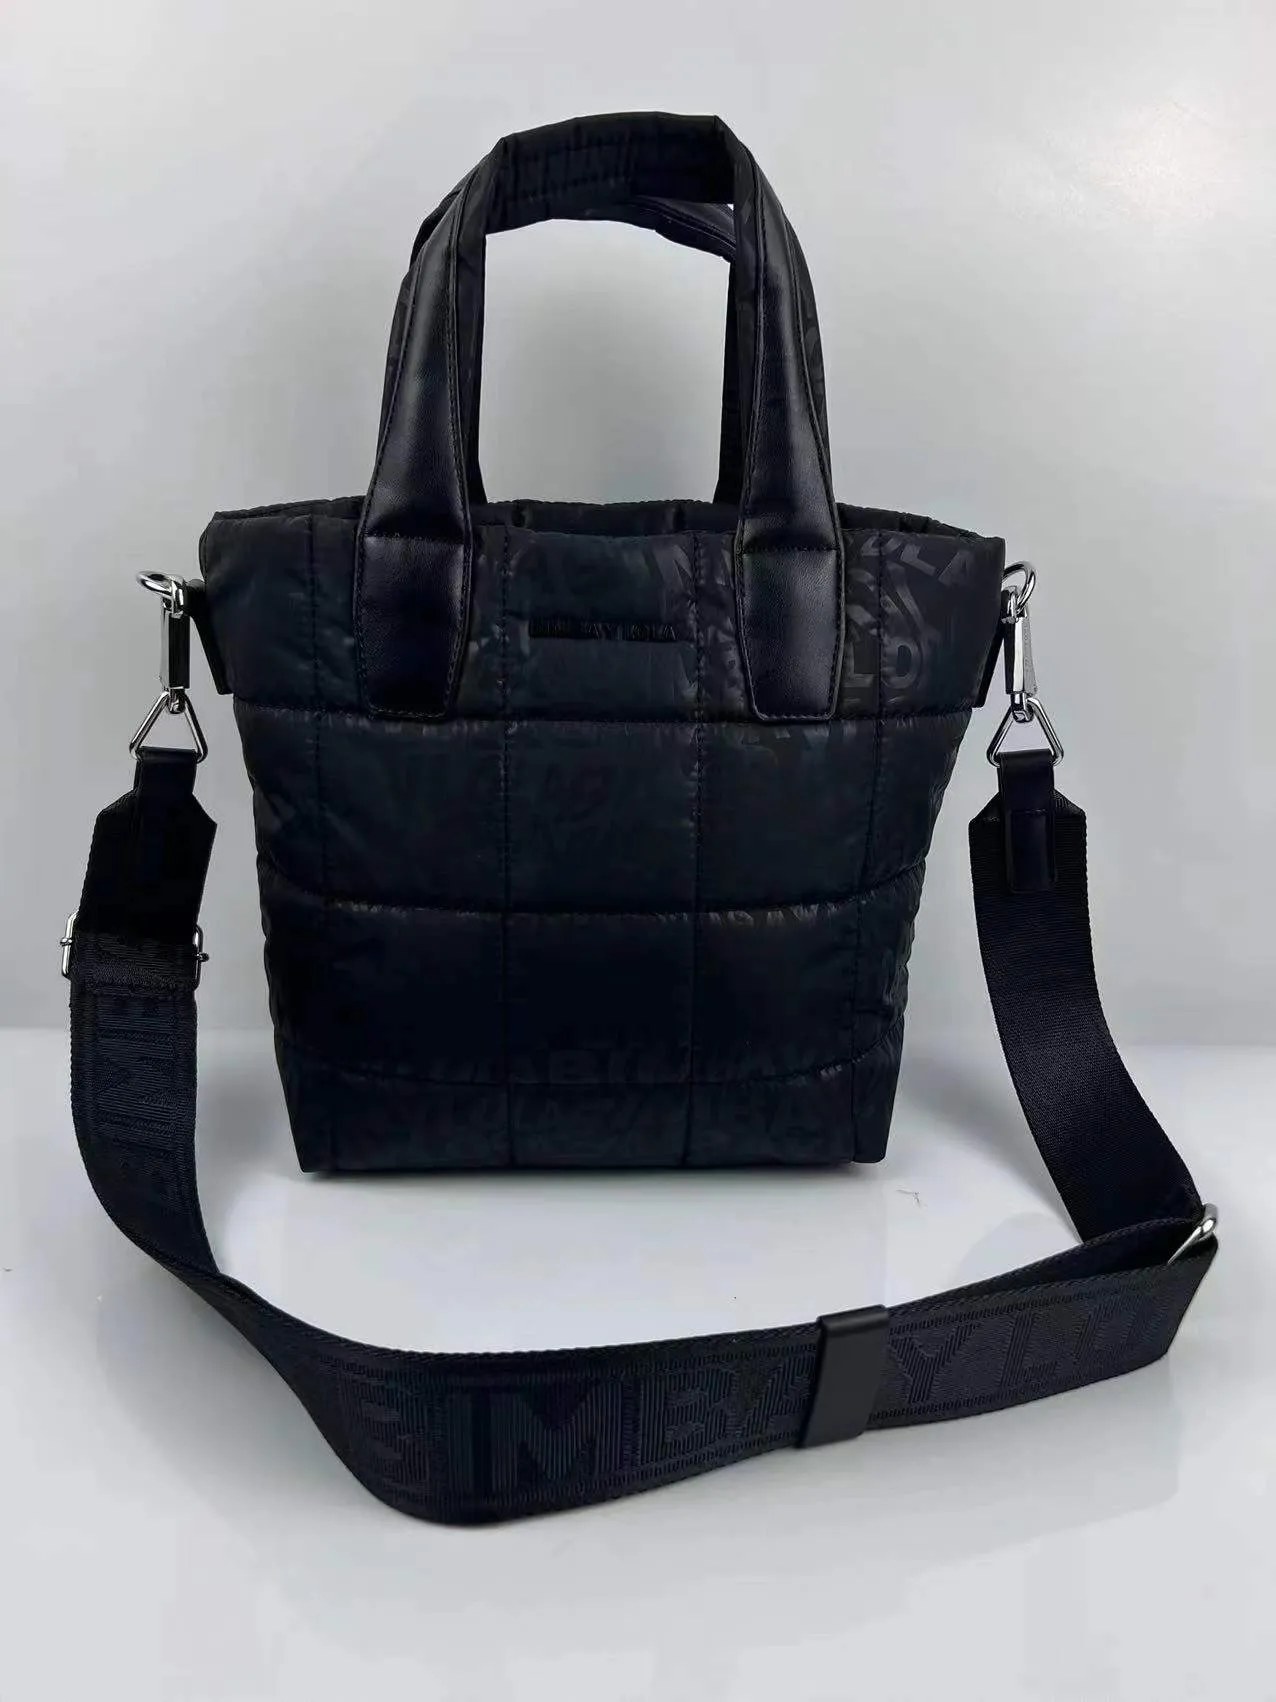 New Spainish Bag BIMBA Y LOLA fashion design bag Nylon Light luxury handbag